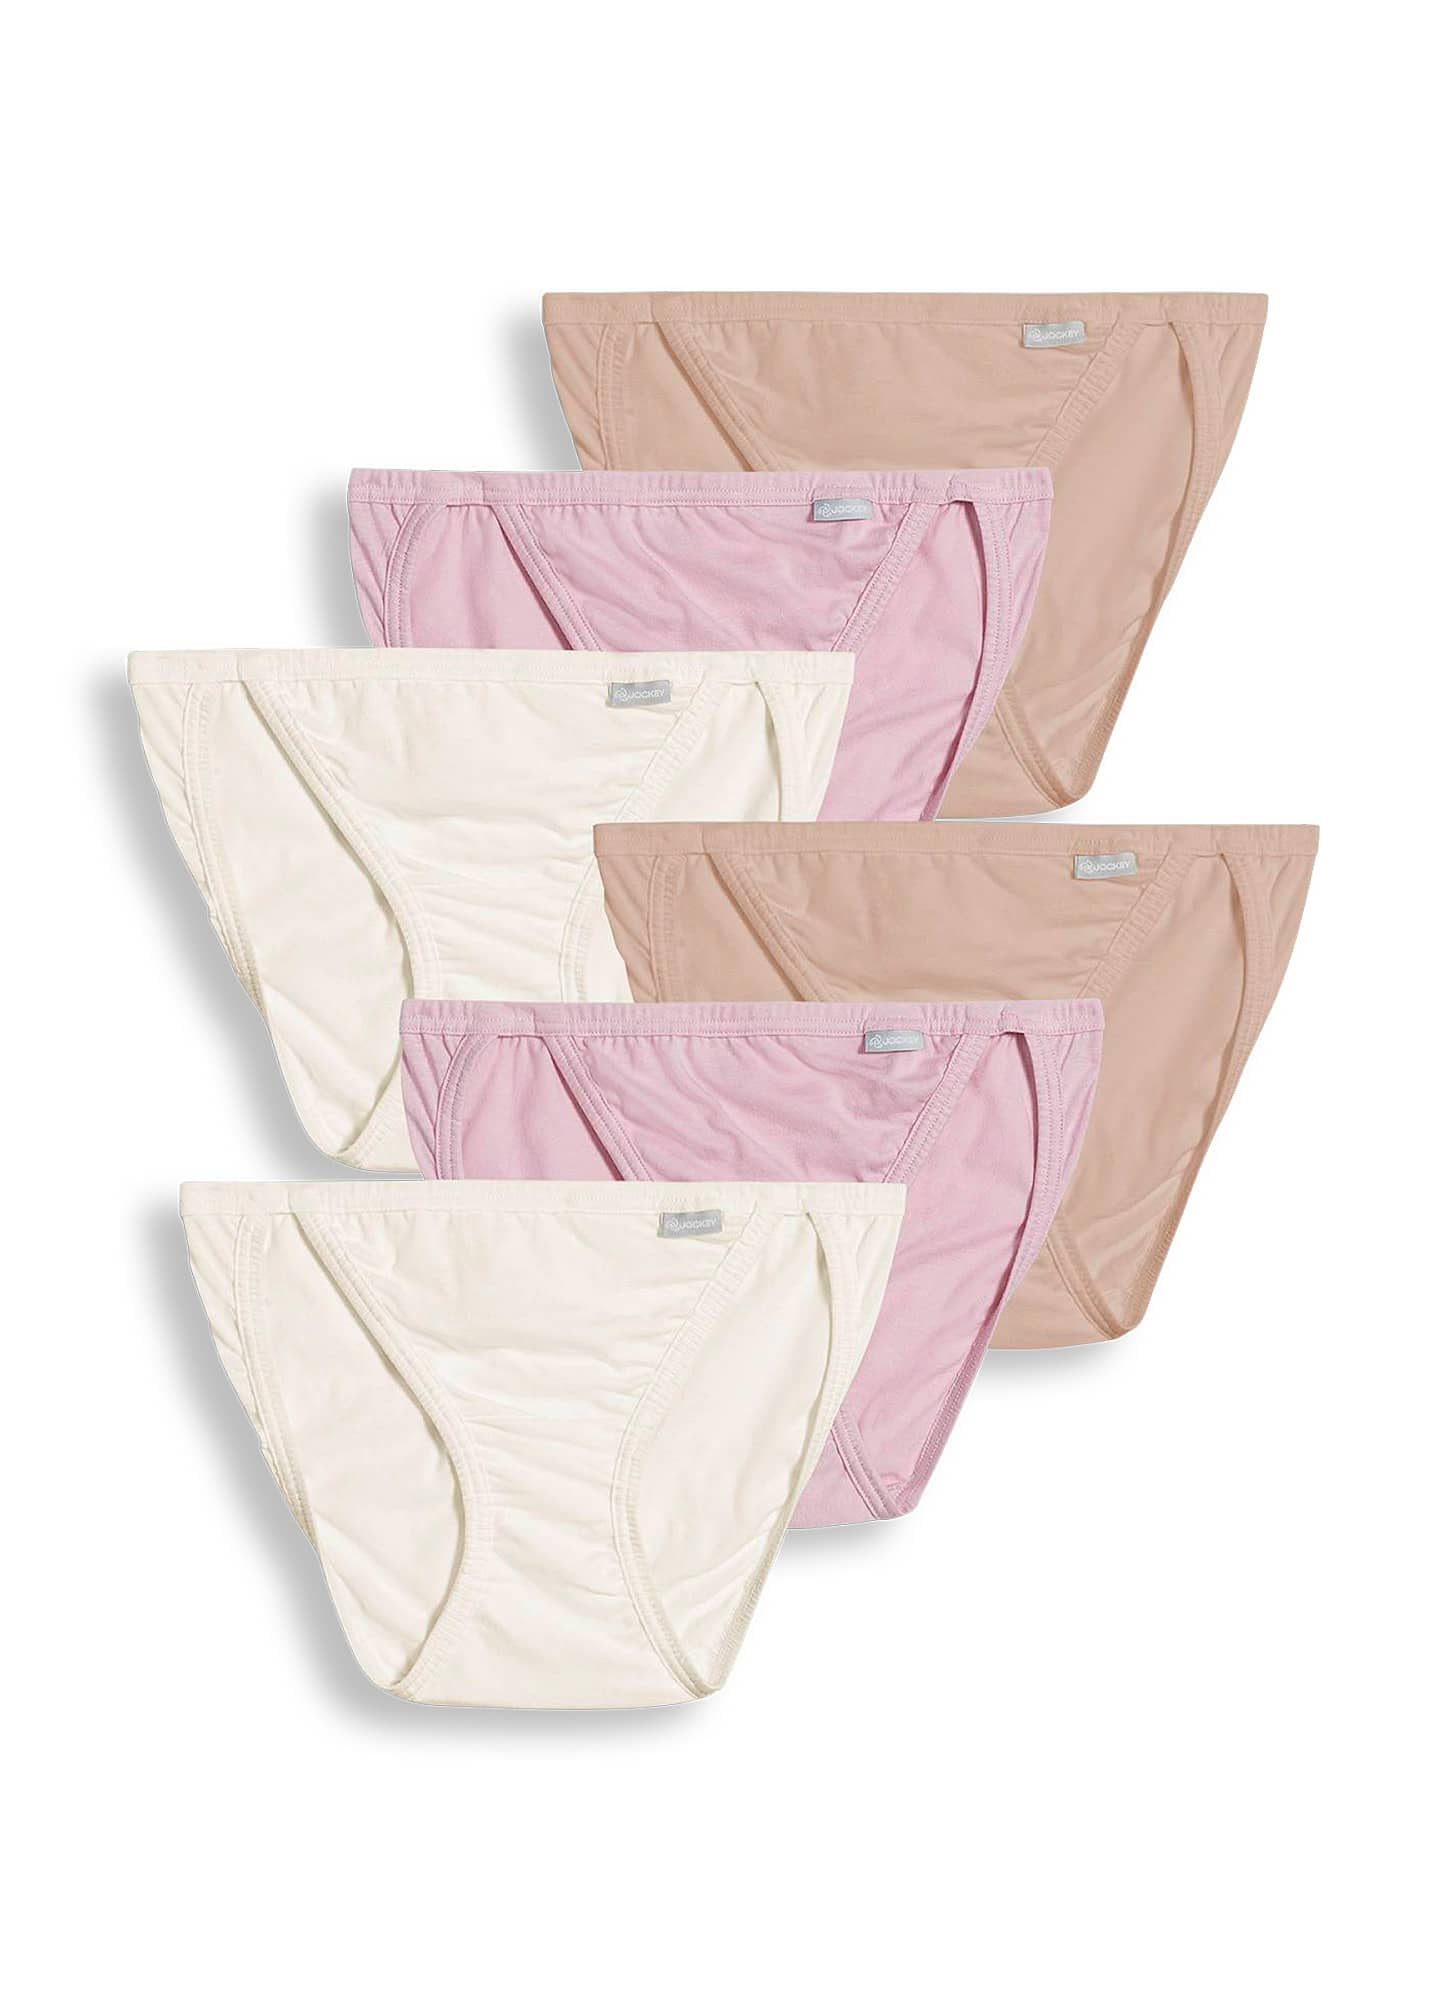 Women's Jockey 3-Pack French Cut (Heather Blue/Deep Blue)100% Cotton  Underwear